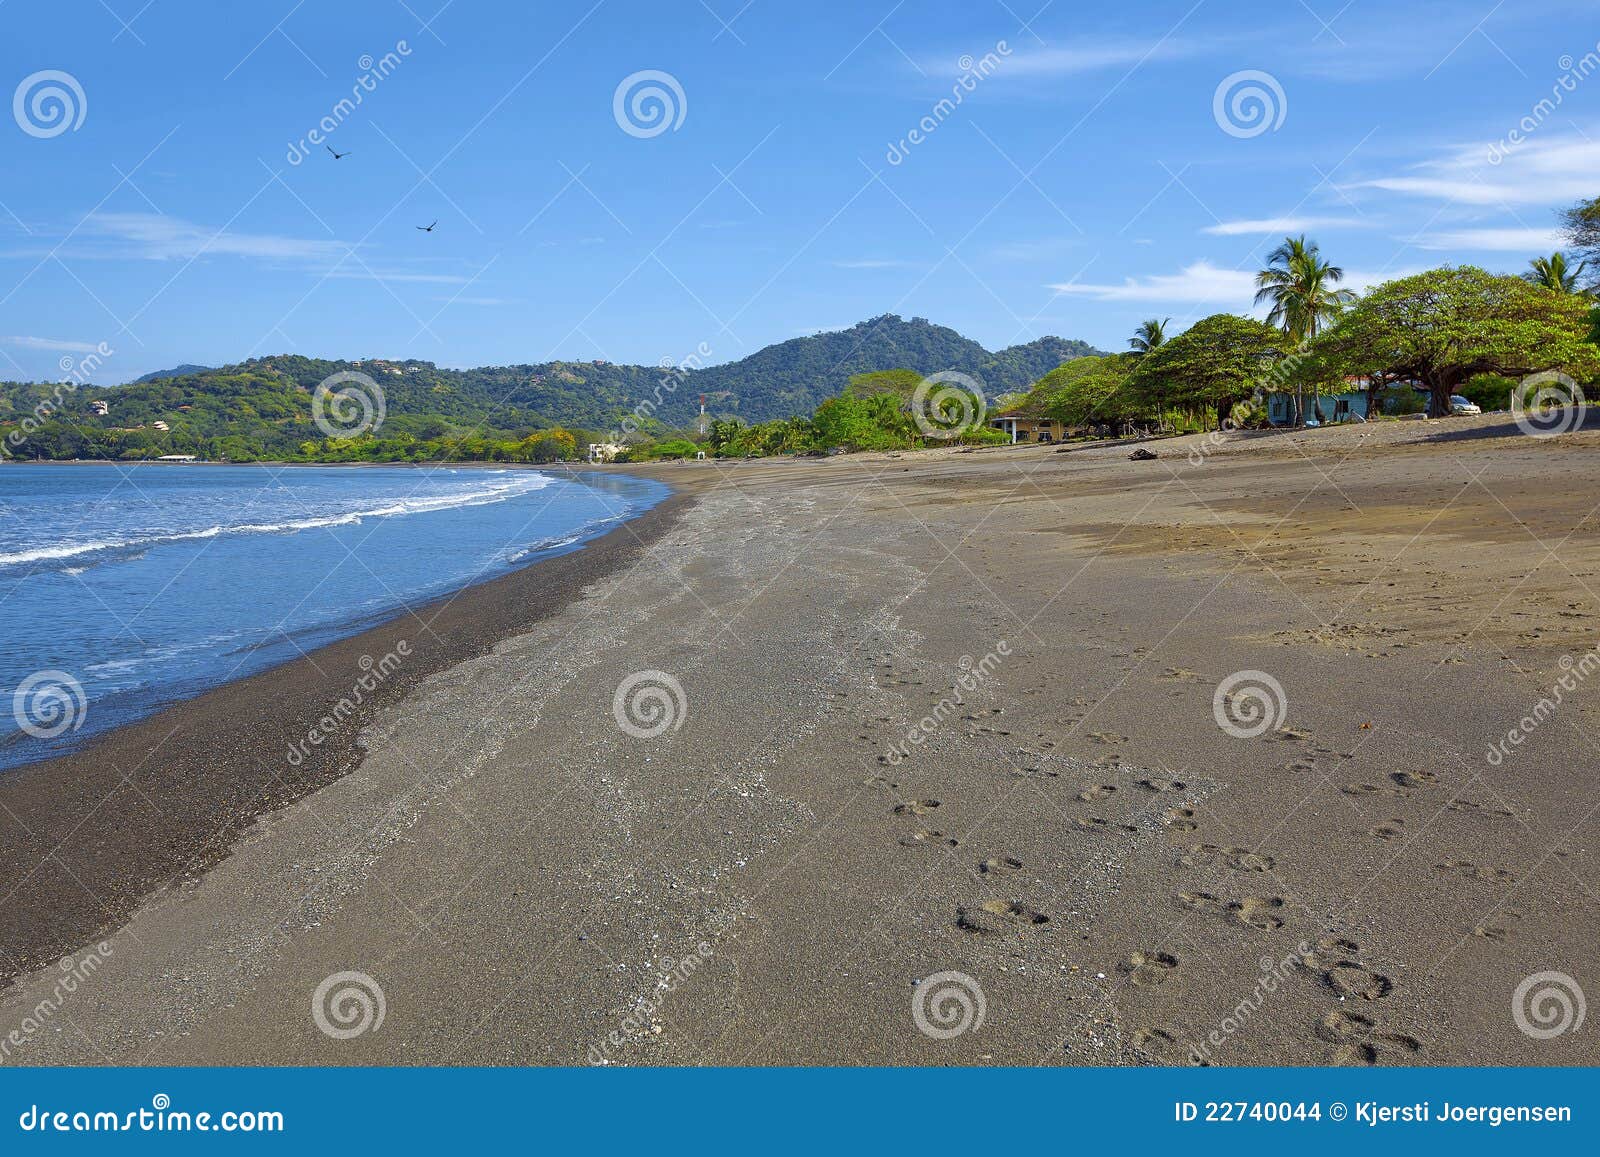 beach in guanacaste